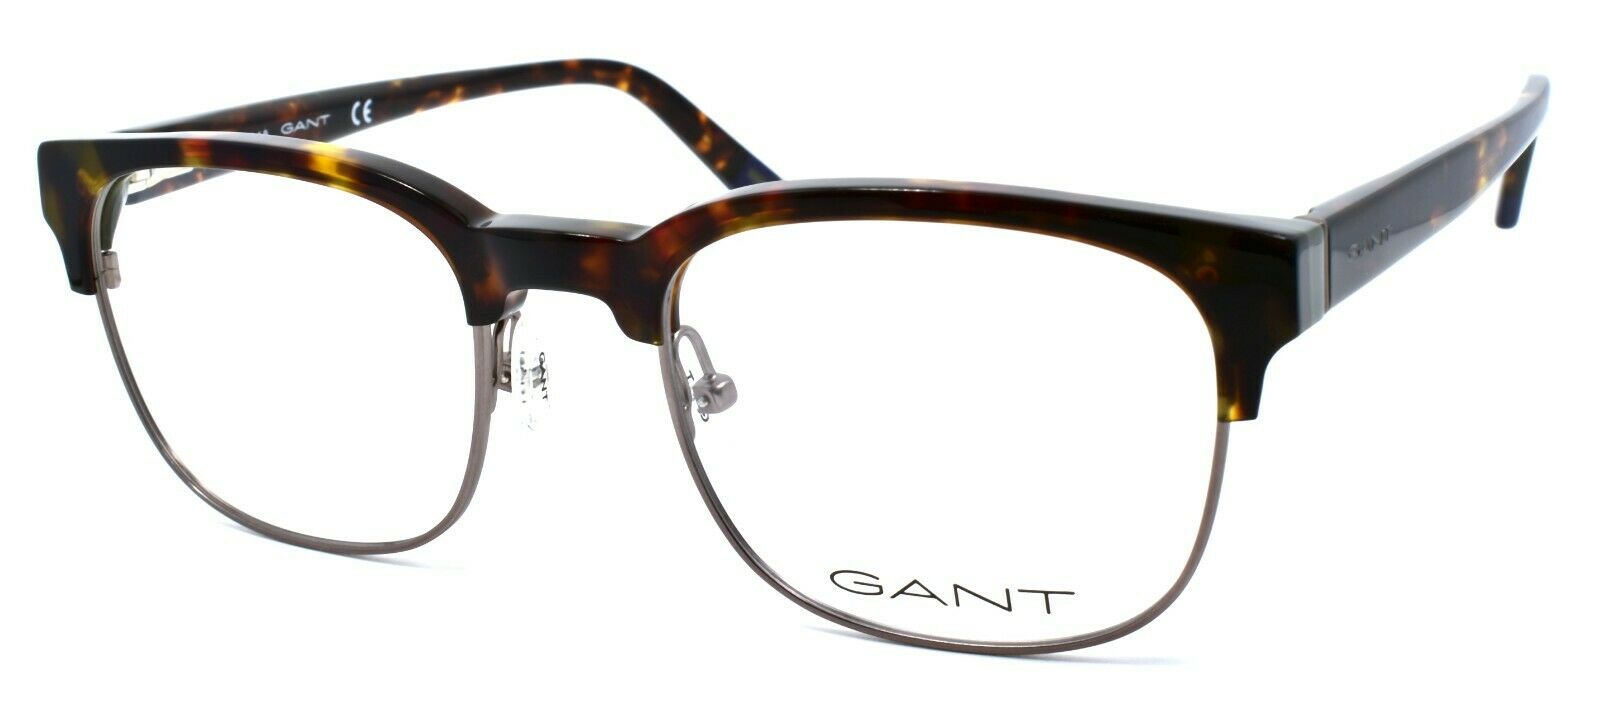 1-GANT GA3176 052 Men's Eyeglasses Frames 51-20-145 Dark Havana-664689951437-IKSpecs